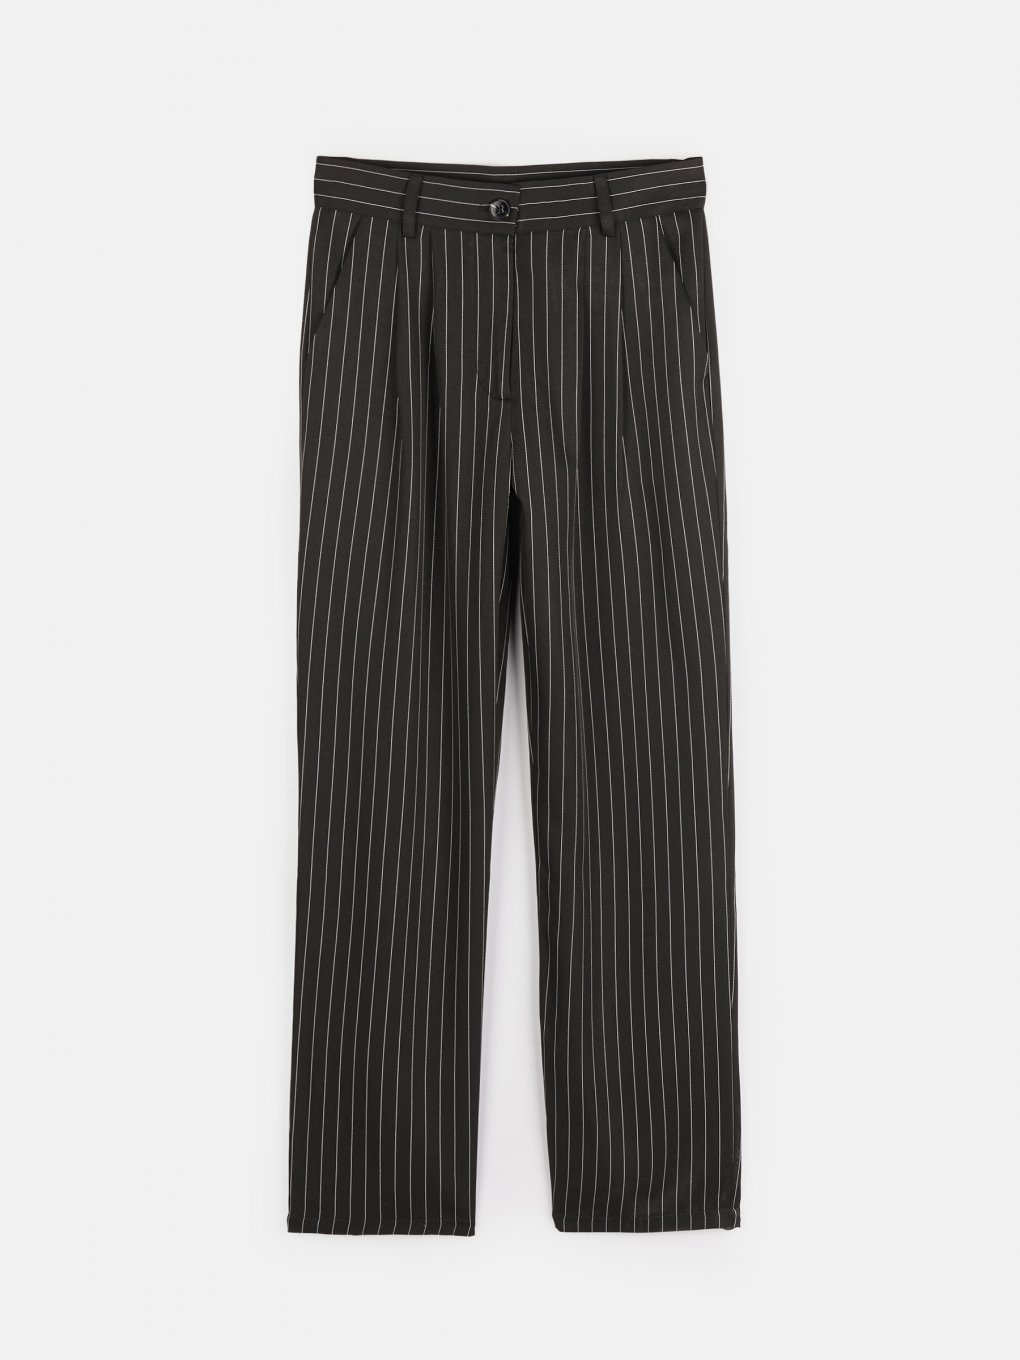 Striped wide leg pants